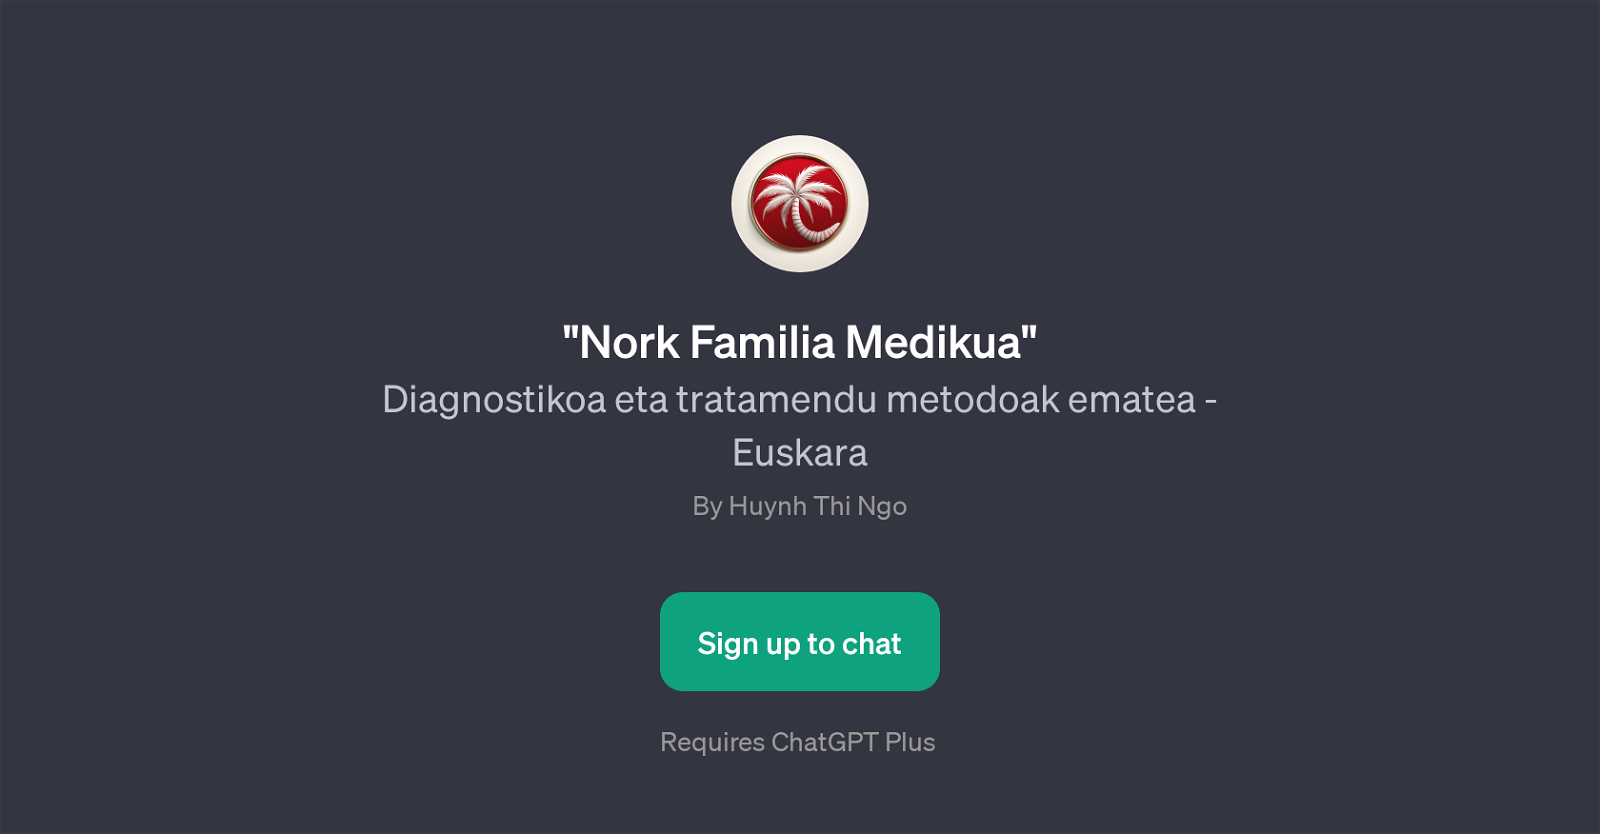 Nork Familia Medikua website